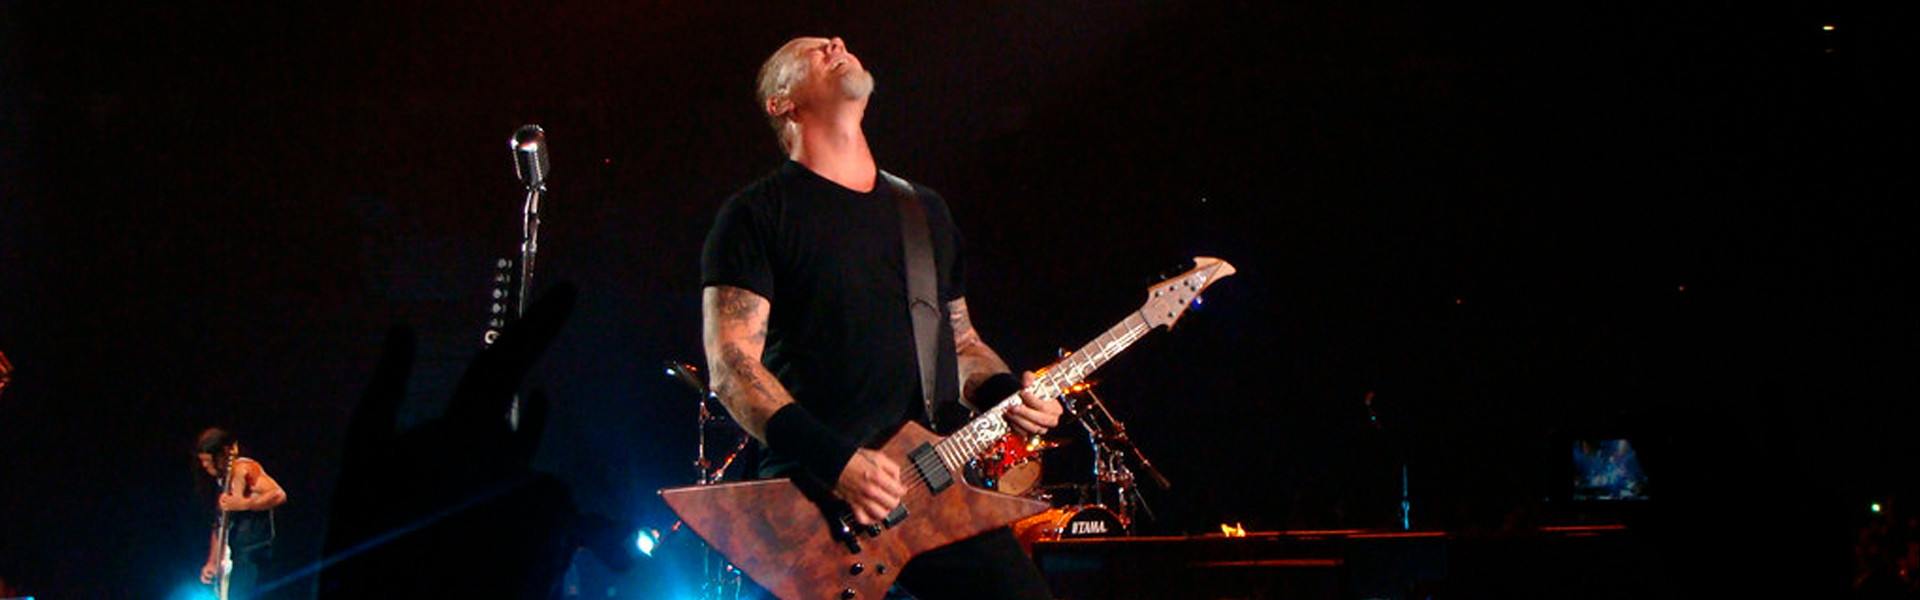 Show do Metallica em Curitiba